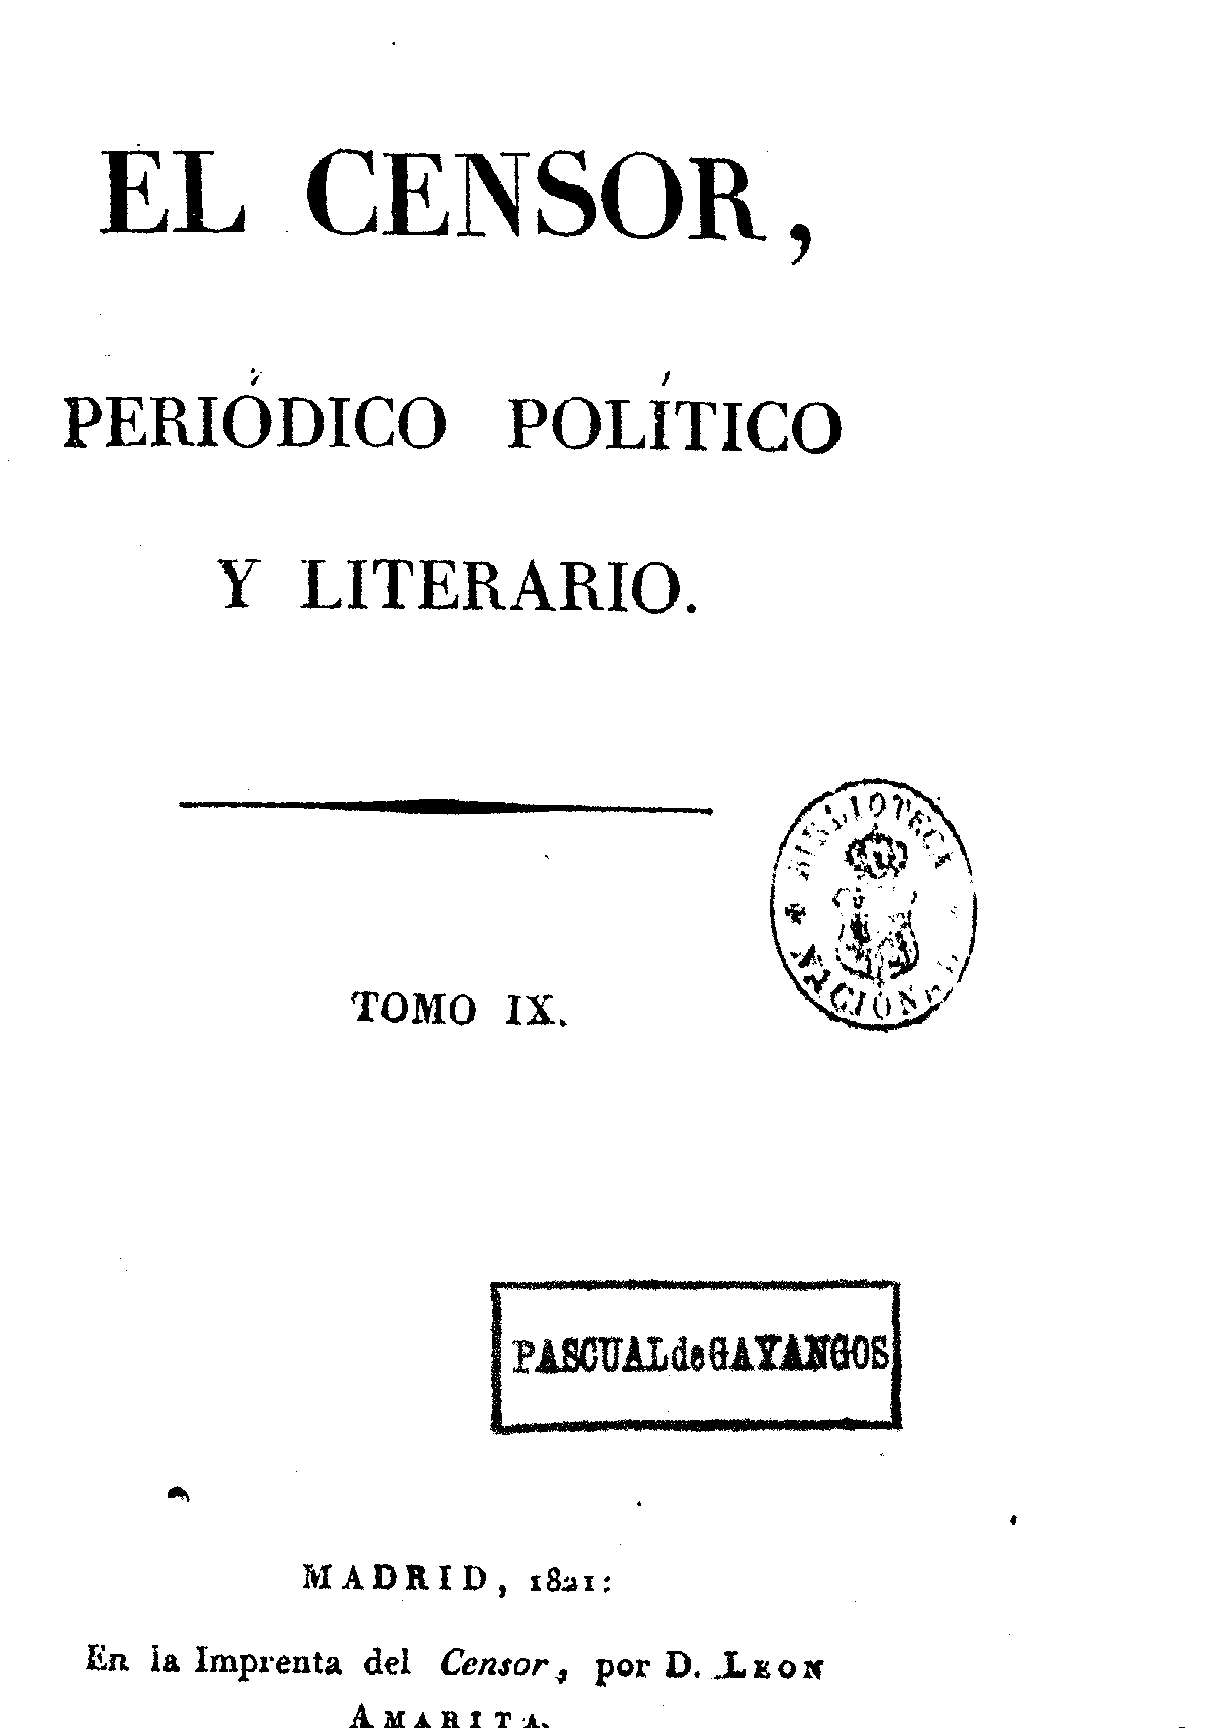 El Censor, periódico político y literario. Tomo IX